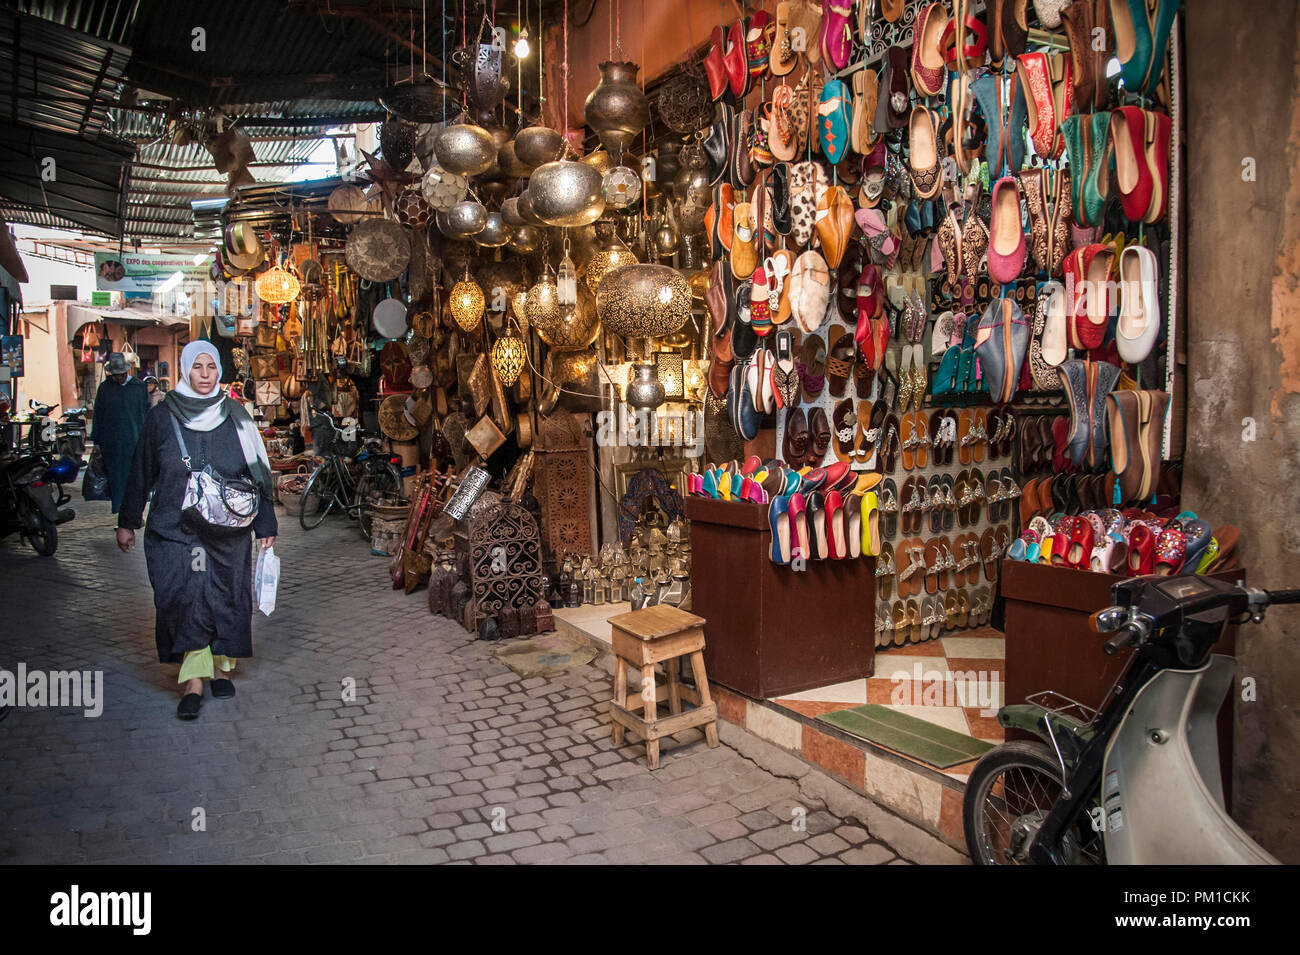 26-02-15, Marrakech, Marocco. Negozi e dello shopping di Medina. Foto © Simon Grosset Foto Stock